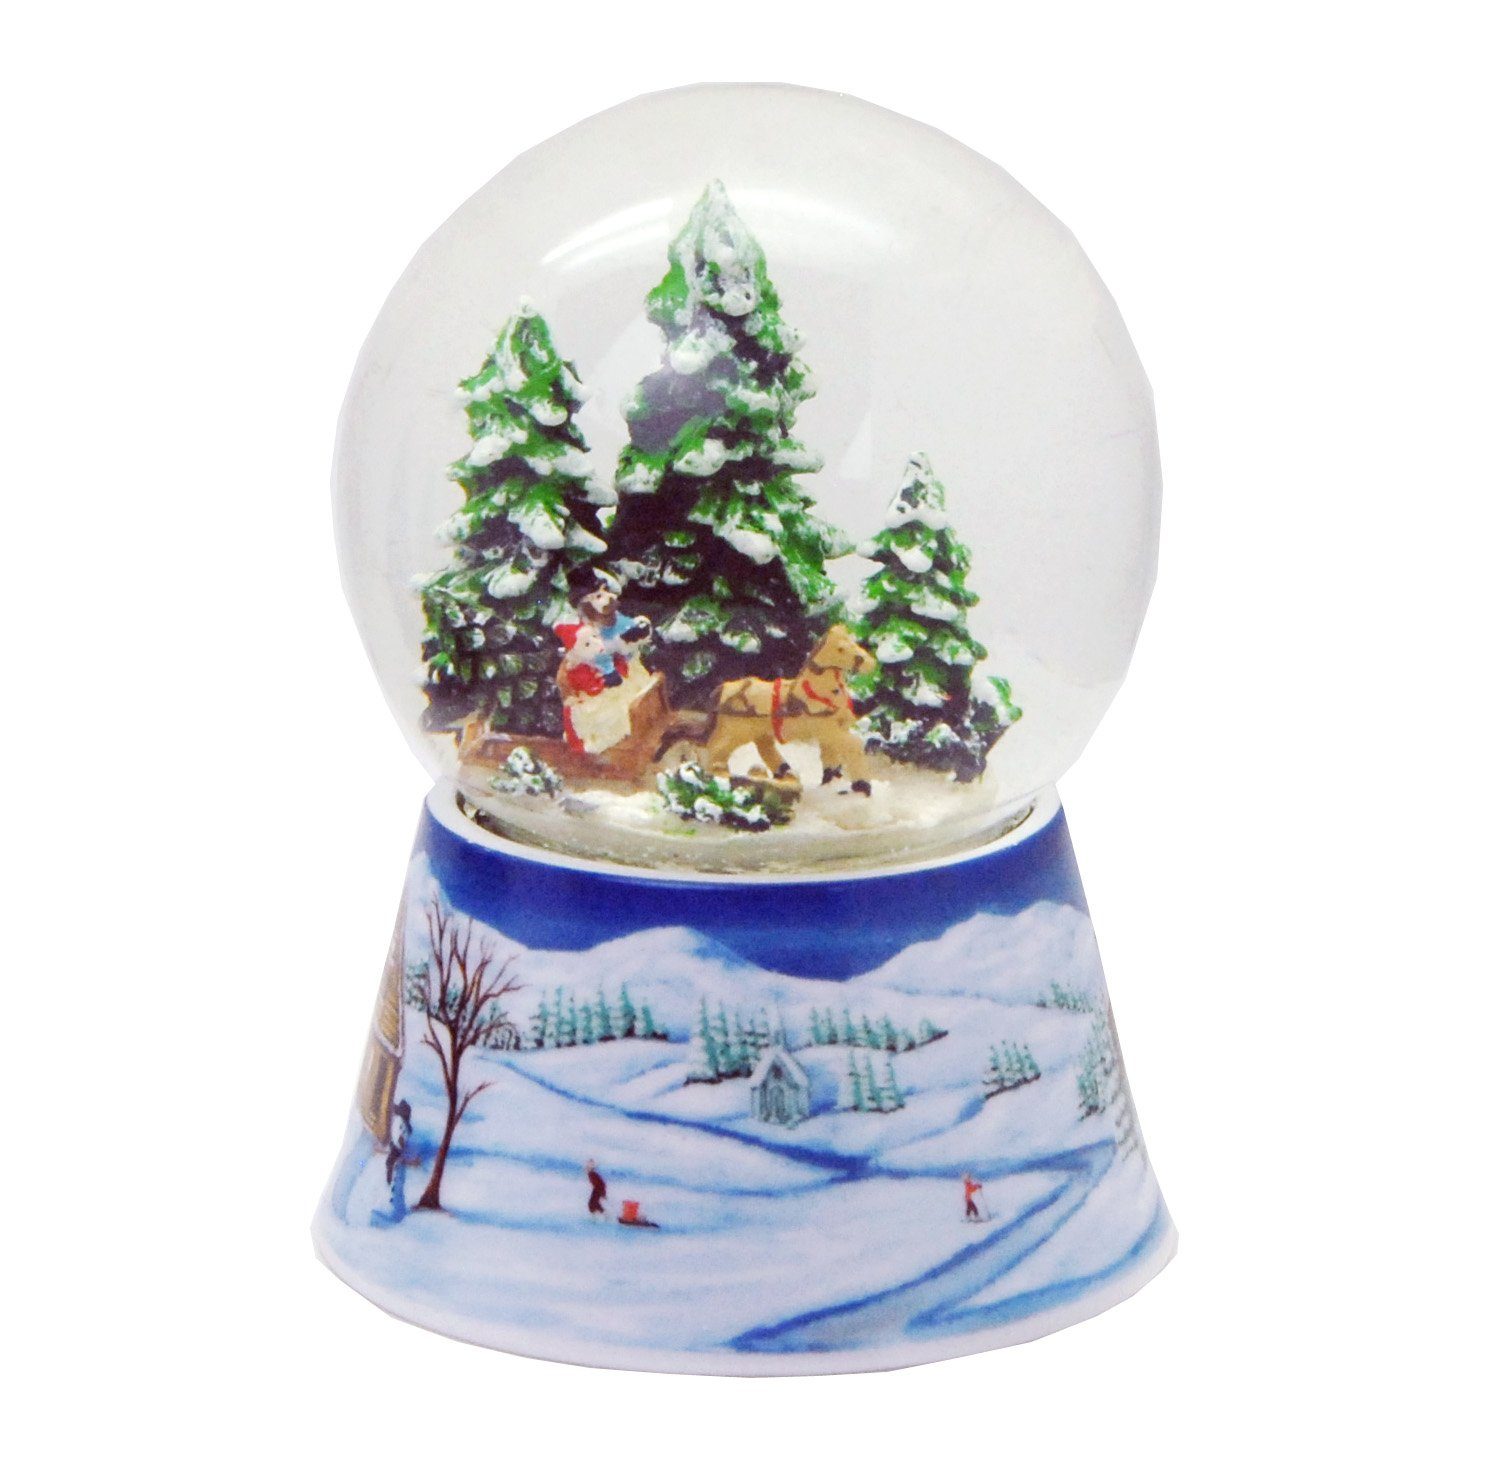 MINIUM-Collection Schneekugel Spieluhr Weihnachten Schlittenfahrt Weihnachtsbaum holen 10cm breit